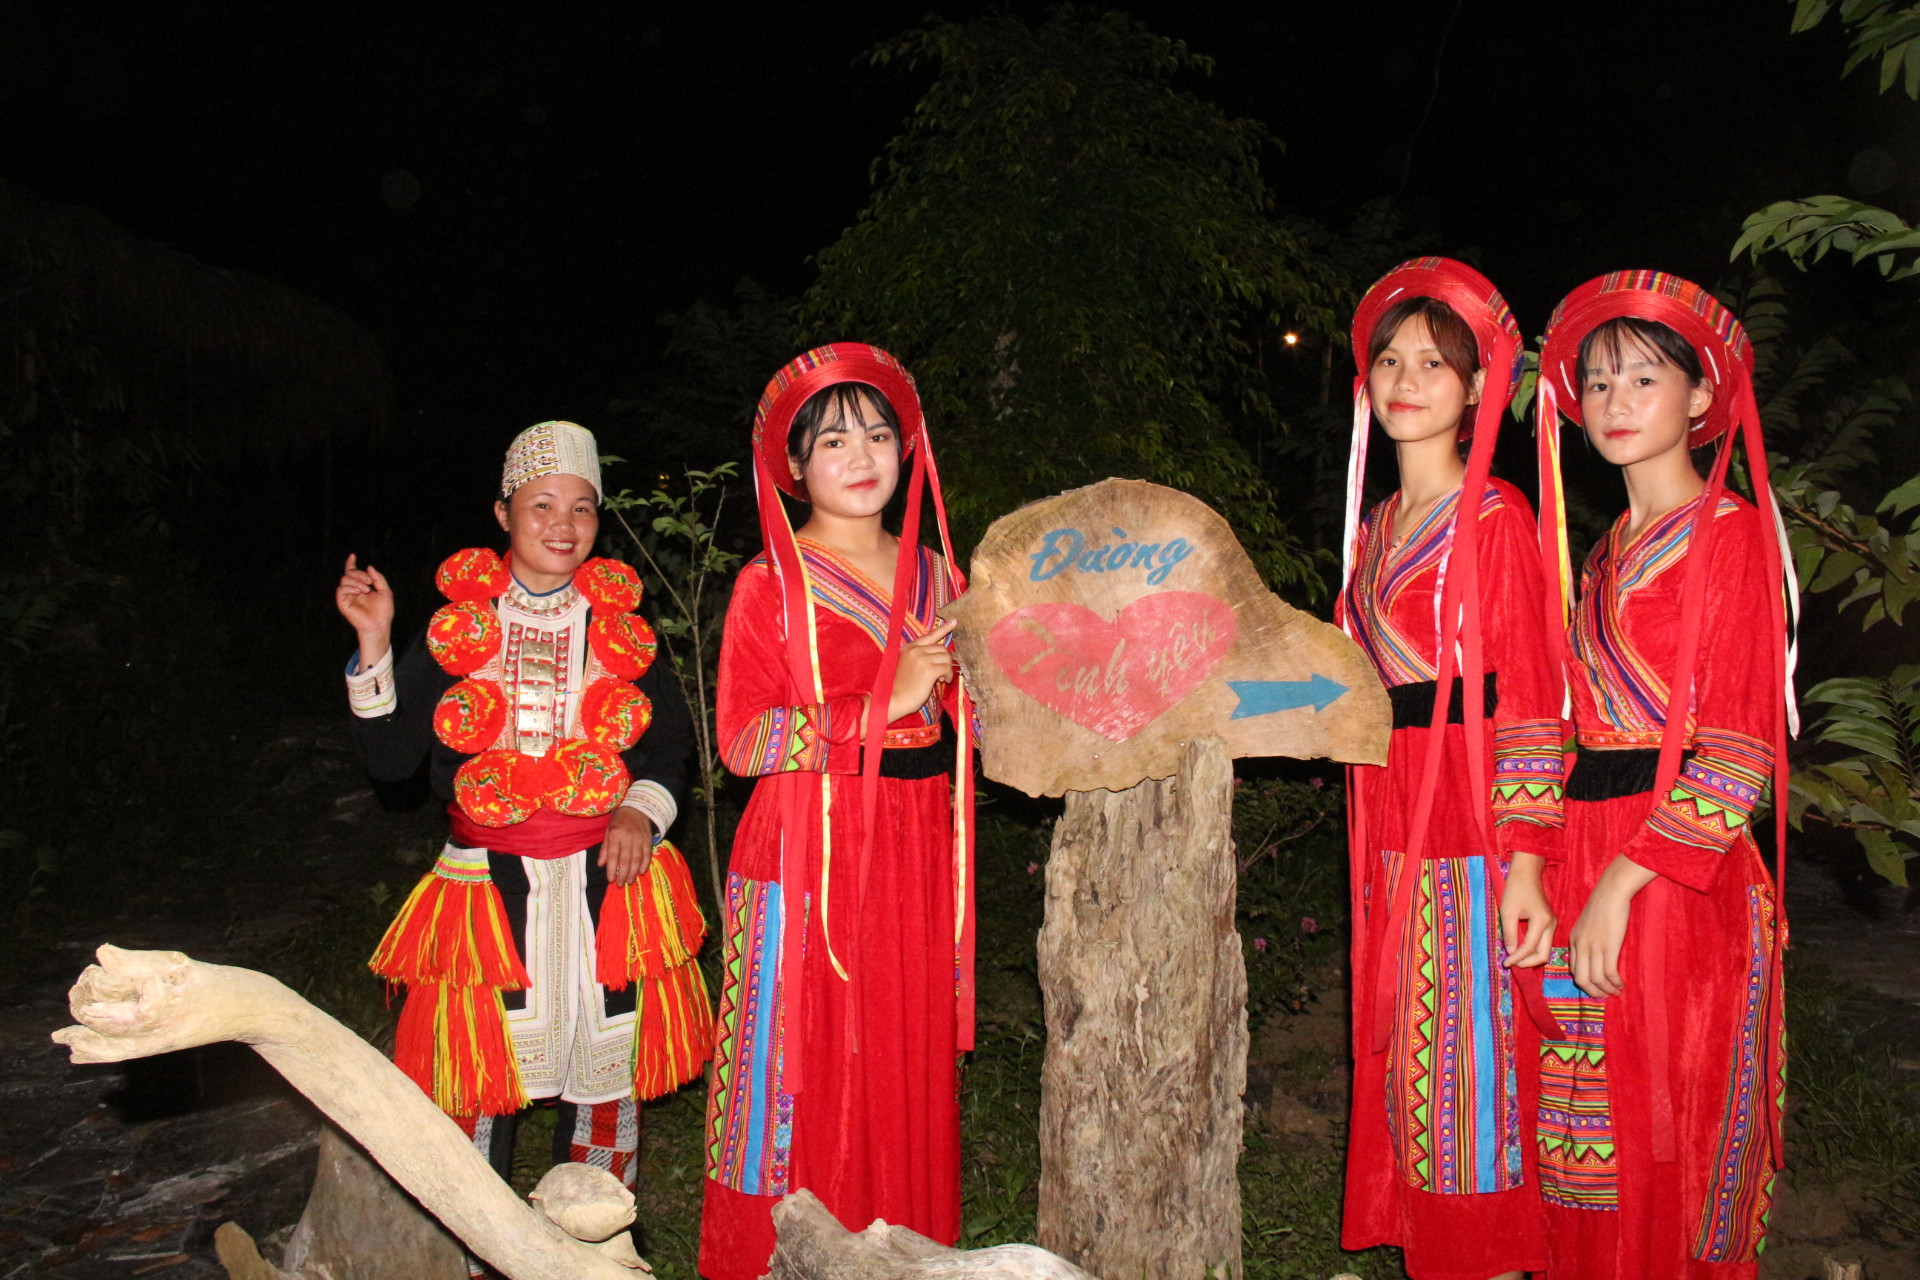 Thiếu nữ Lâm Bình trong trang phục truyền thống hệt như những đóa hoa rừng trinh nguyên, mộc mạc, thân thiện, mến khách.